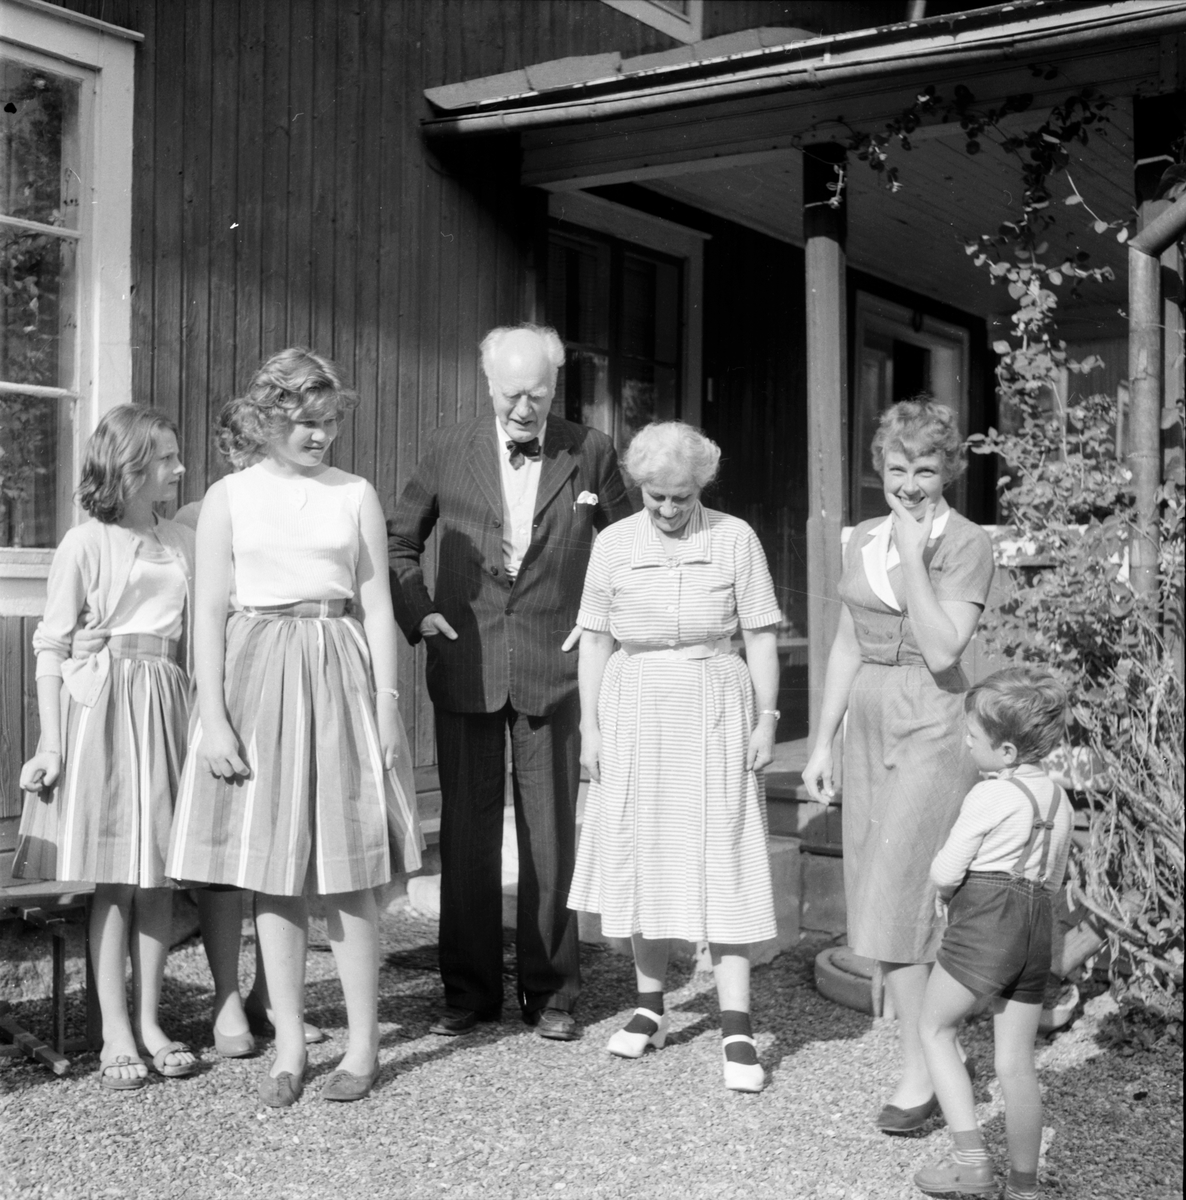 Strömbäck, Dag, Djuphällan, Hedemora. 12 aug. 1960